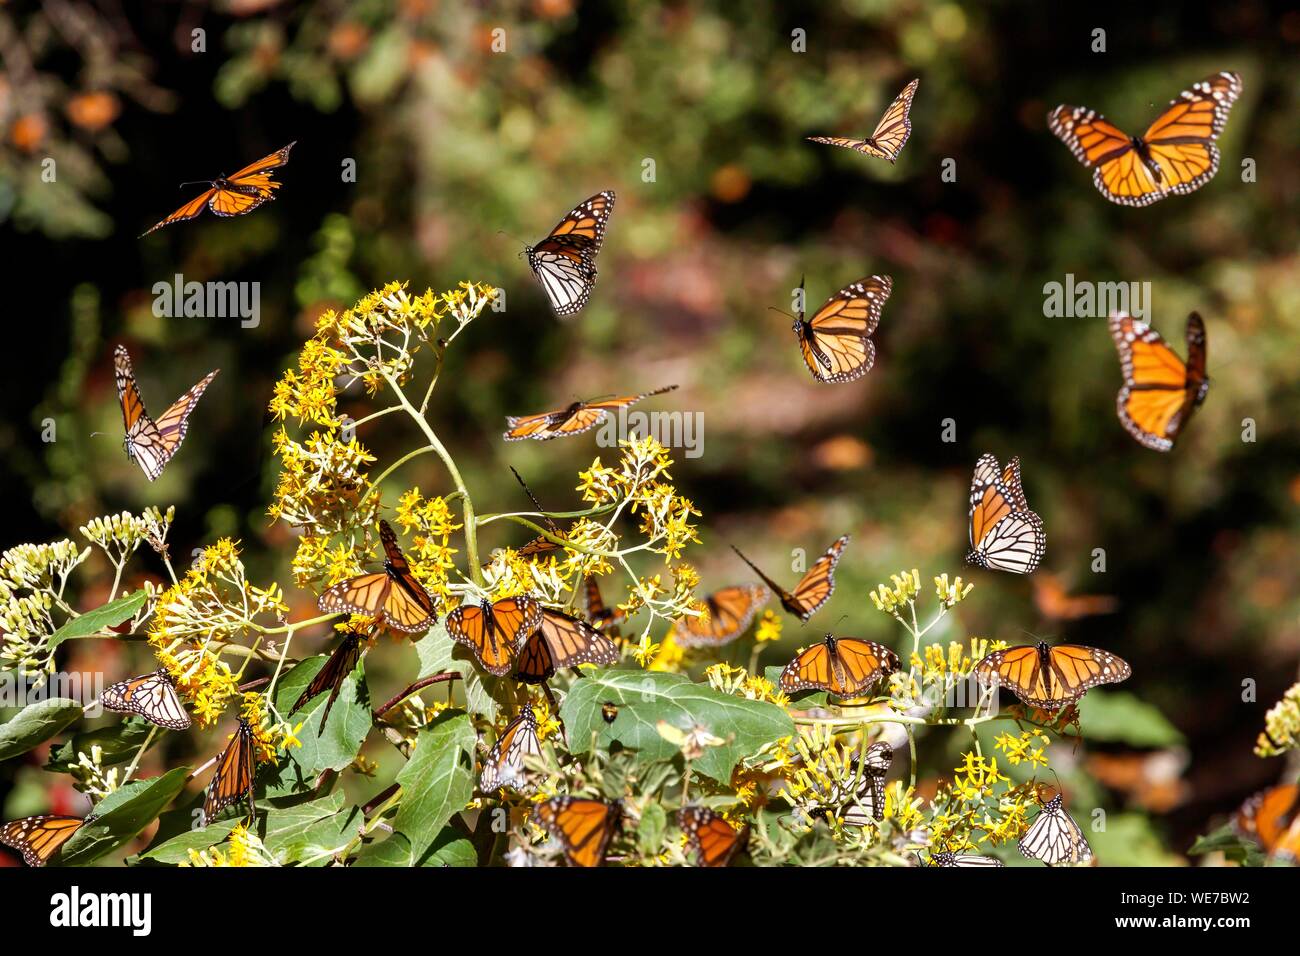 México, Estado de Michoacán, Angangueo, patrimonio mundial de la Unesco, Reserva de la Biosfera Mariposa Monarca, El Rosario, las mariposas monarca (Danaus plexippus) Foto de stock